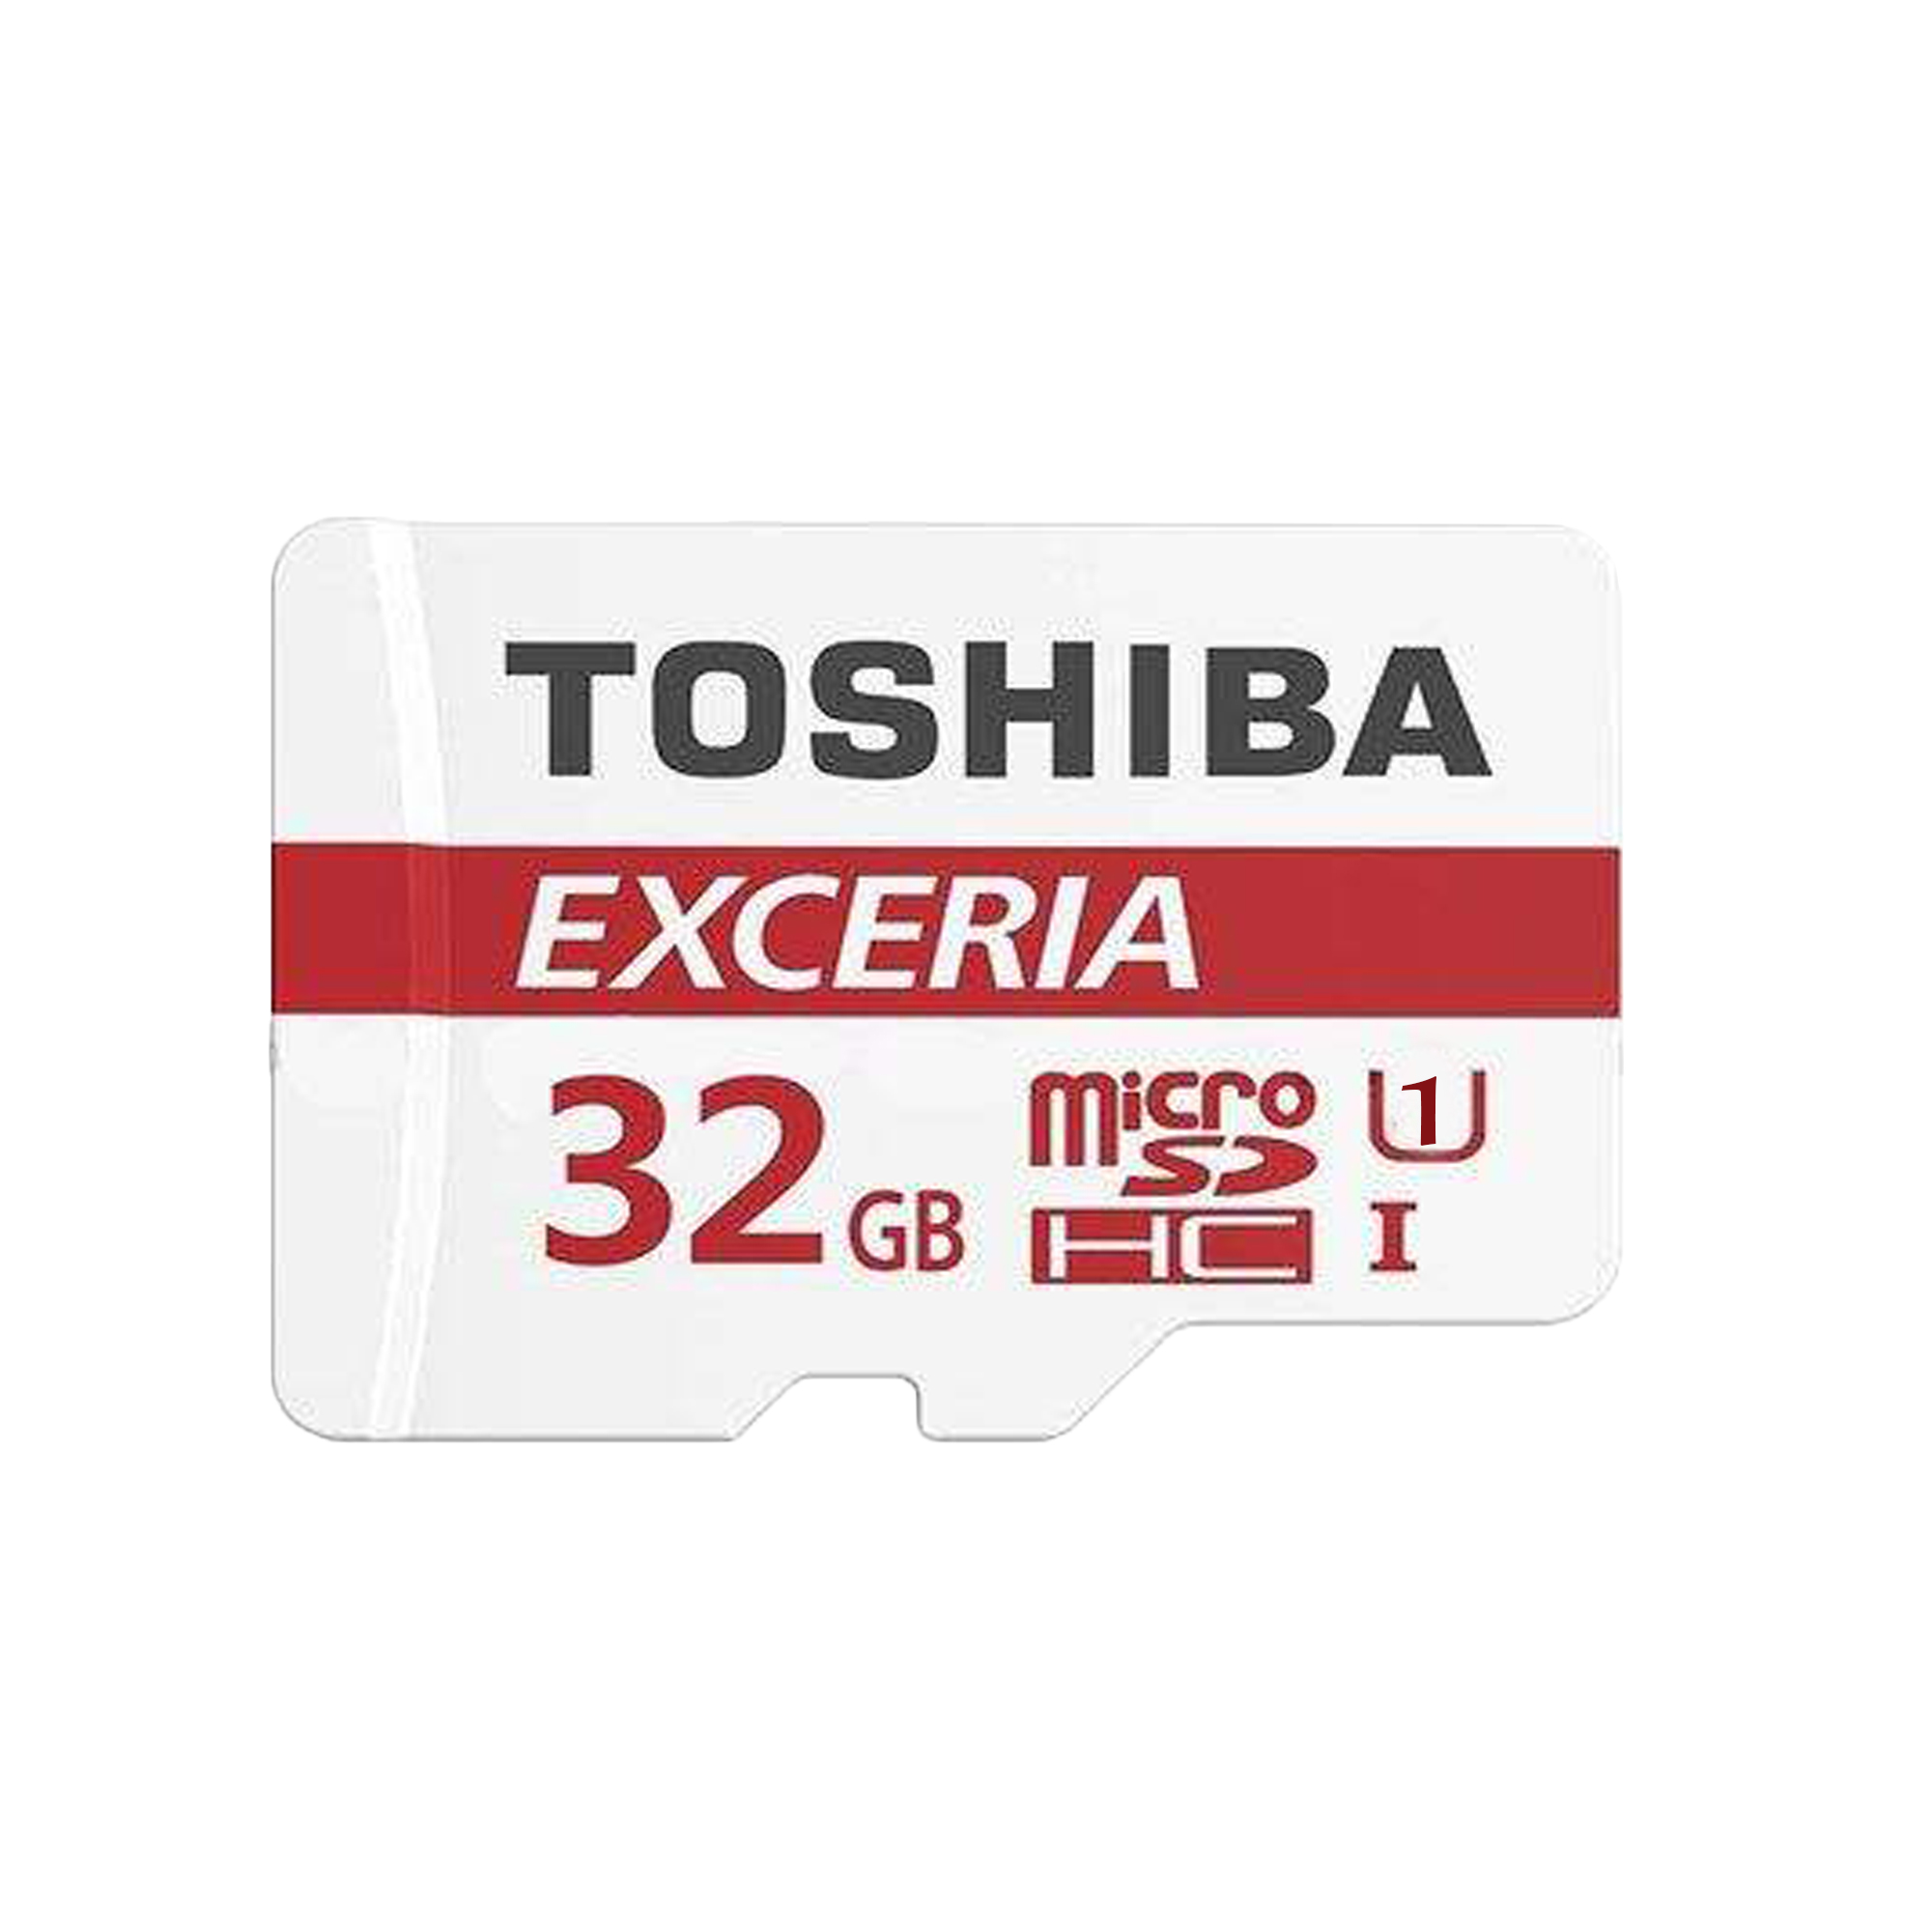  کارت حافظه microSDHC توشیبا مدل EXCERIA M302-EA کلاس 10 استاندارد UHS-I U1 سرعت 90MBps ظرفیت 32 گیگابایت به همراه آداپتور SD